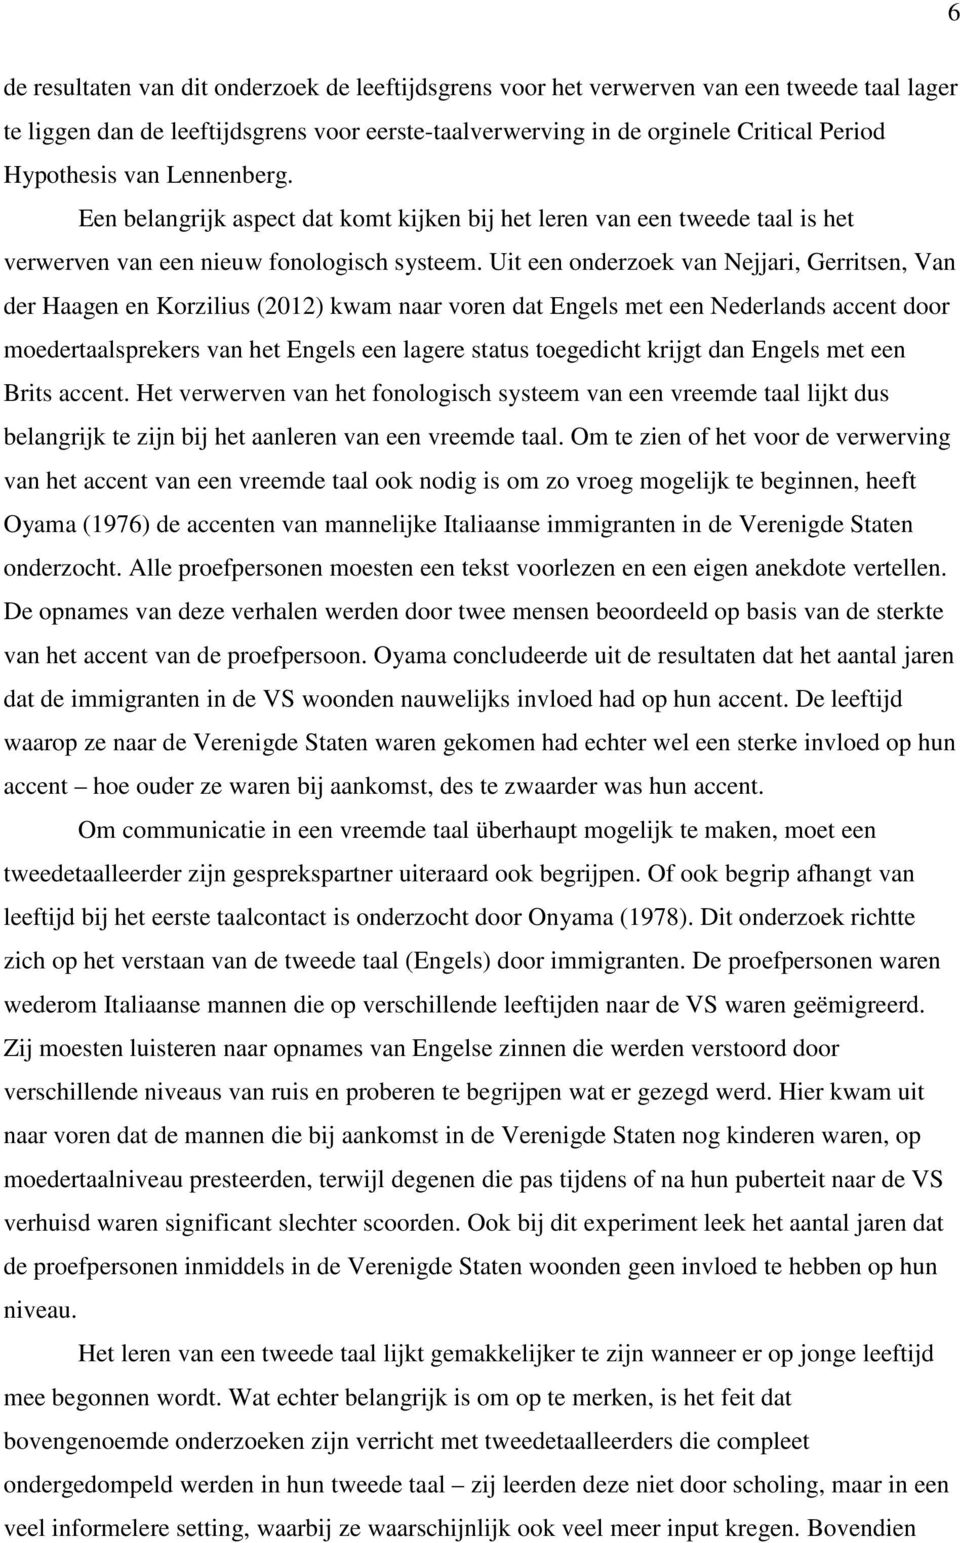 Uit een onderzoek van Nejjari, Gerritsen, Van der Haagen en Korzilius (2012) kwam naar voren dat Engels met een Nederlands accent door moedertaalsprekers van het Engels een lagere status toegedicht